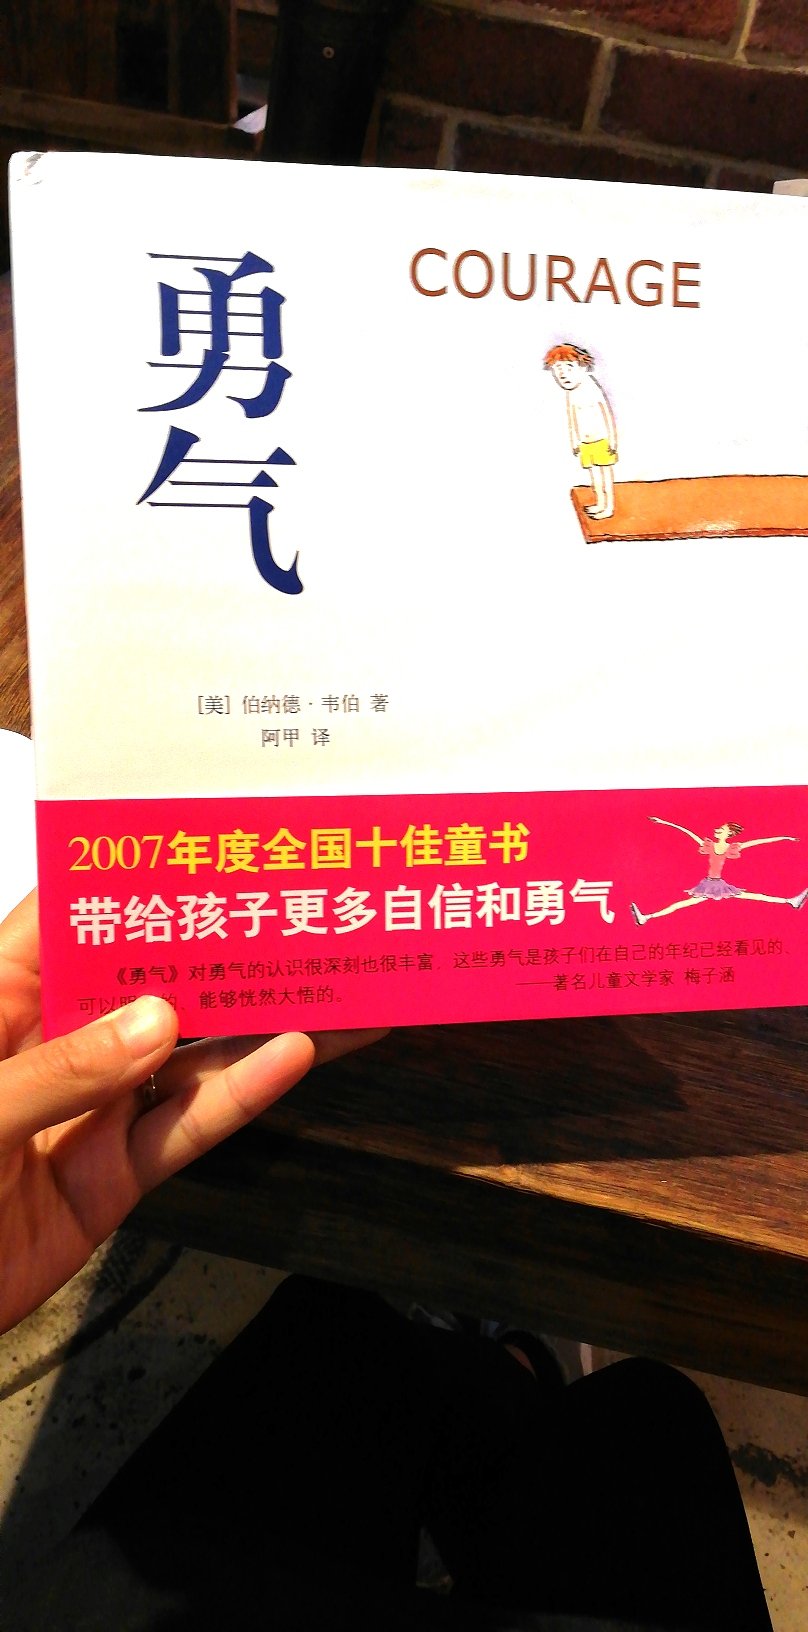 最外层硬卡纸，很好，让孩子看看图片，英文中文都有，给孩子读一读，增加阅读量，挺喜欢这书